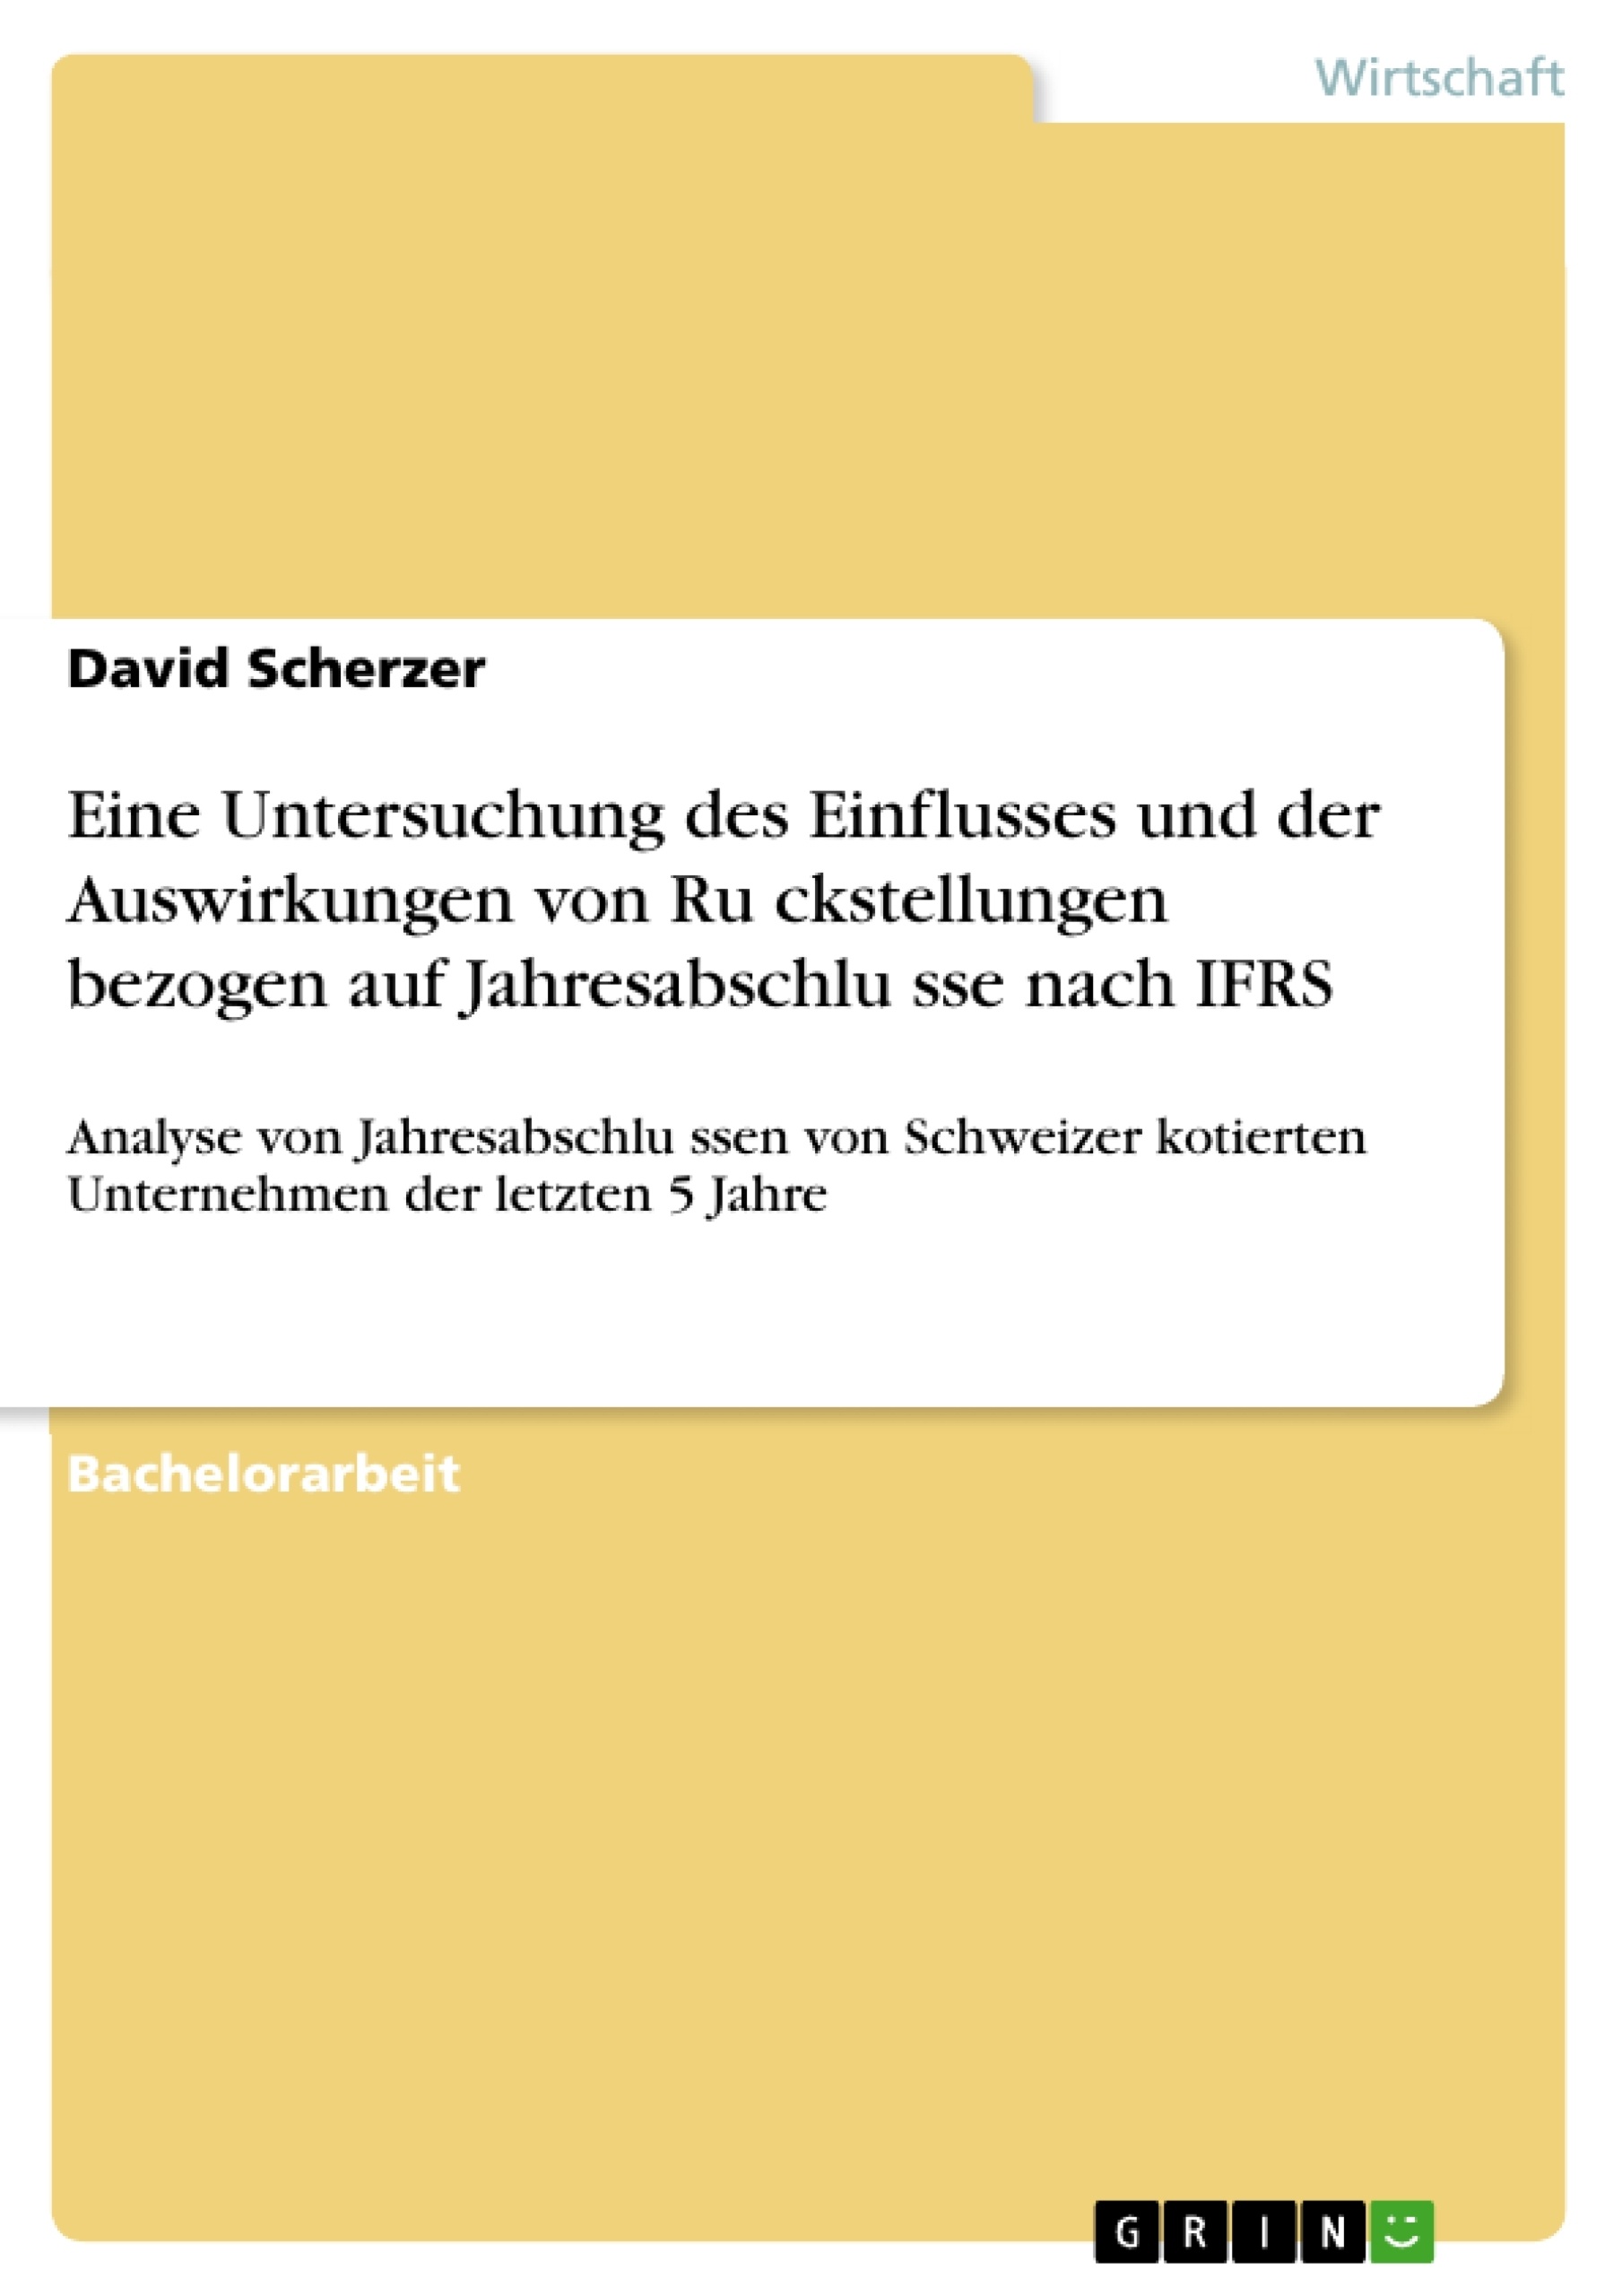 Titel: Eine Untersuchung des Einflusses und der Auswirkungen von Rückstellungen bezogen auf Jahresabschlüsse nach IFRS